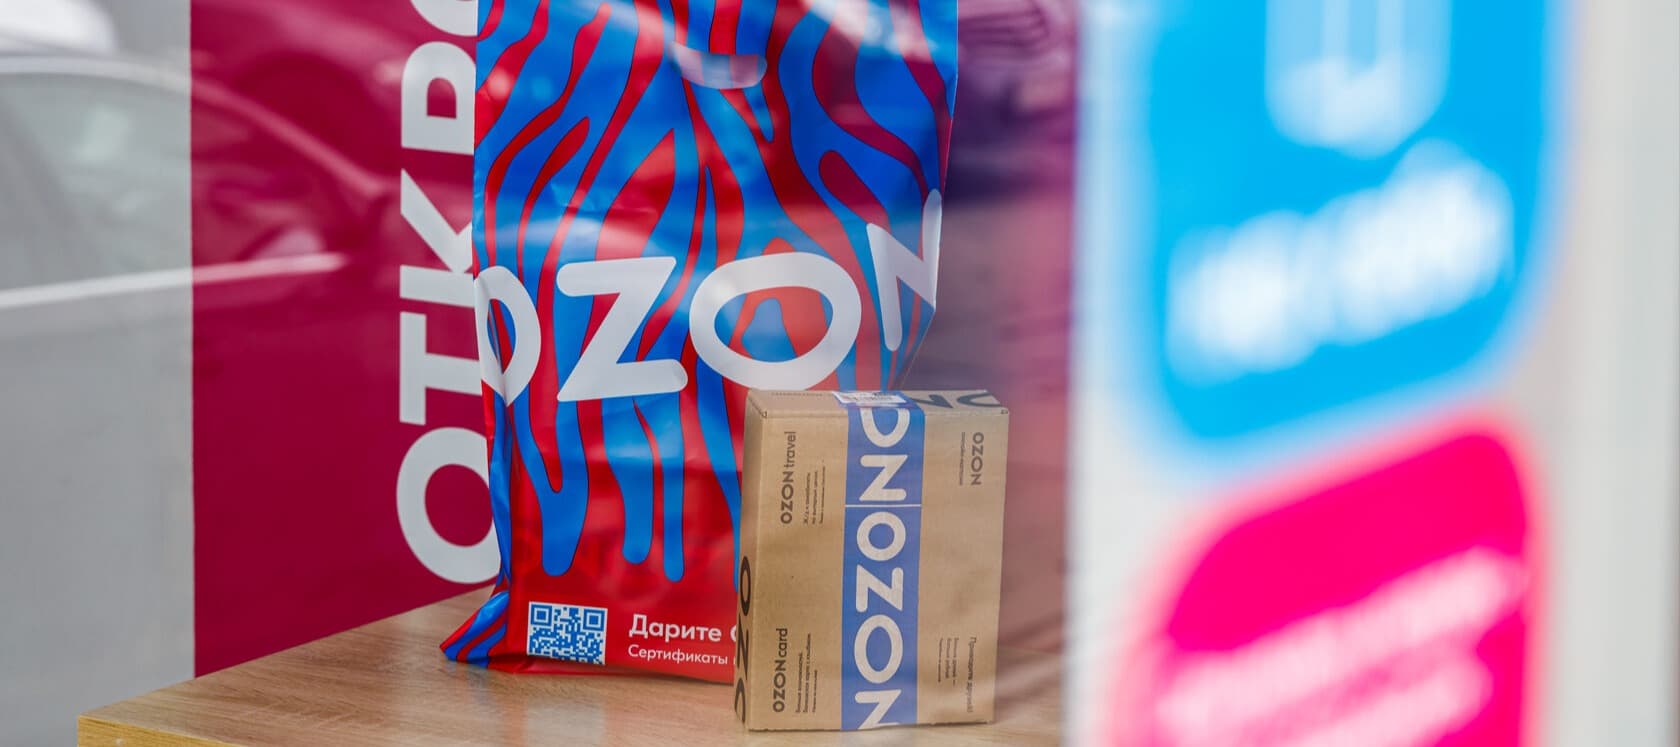 Фото новости: "Ozon остался самой популярной франшизой в России"